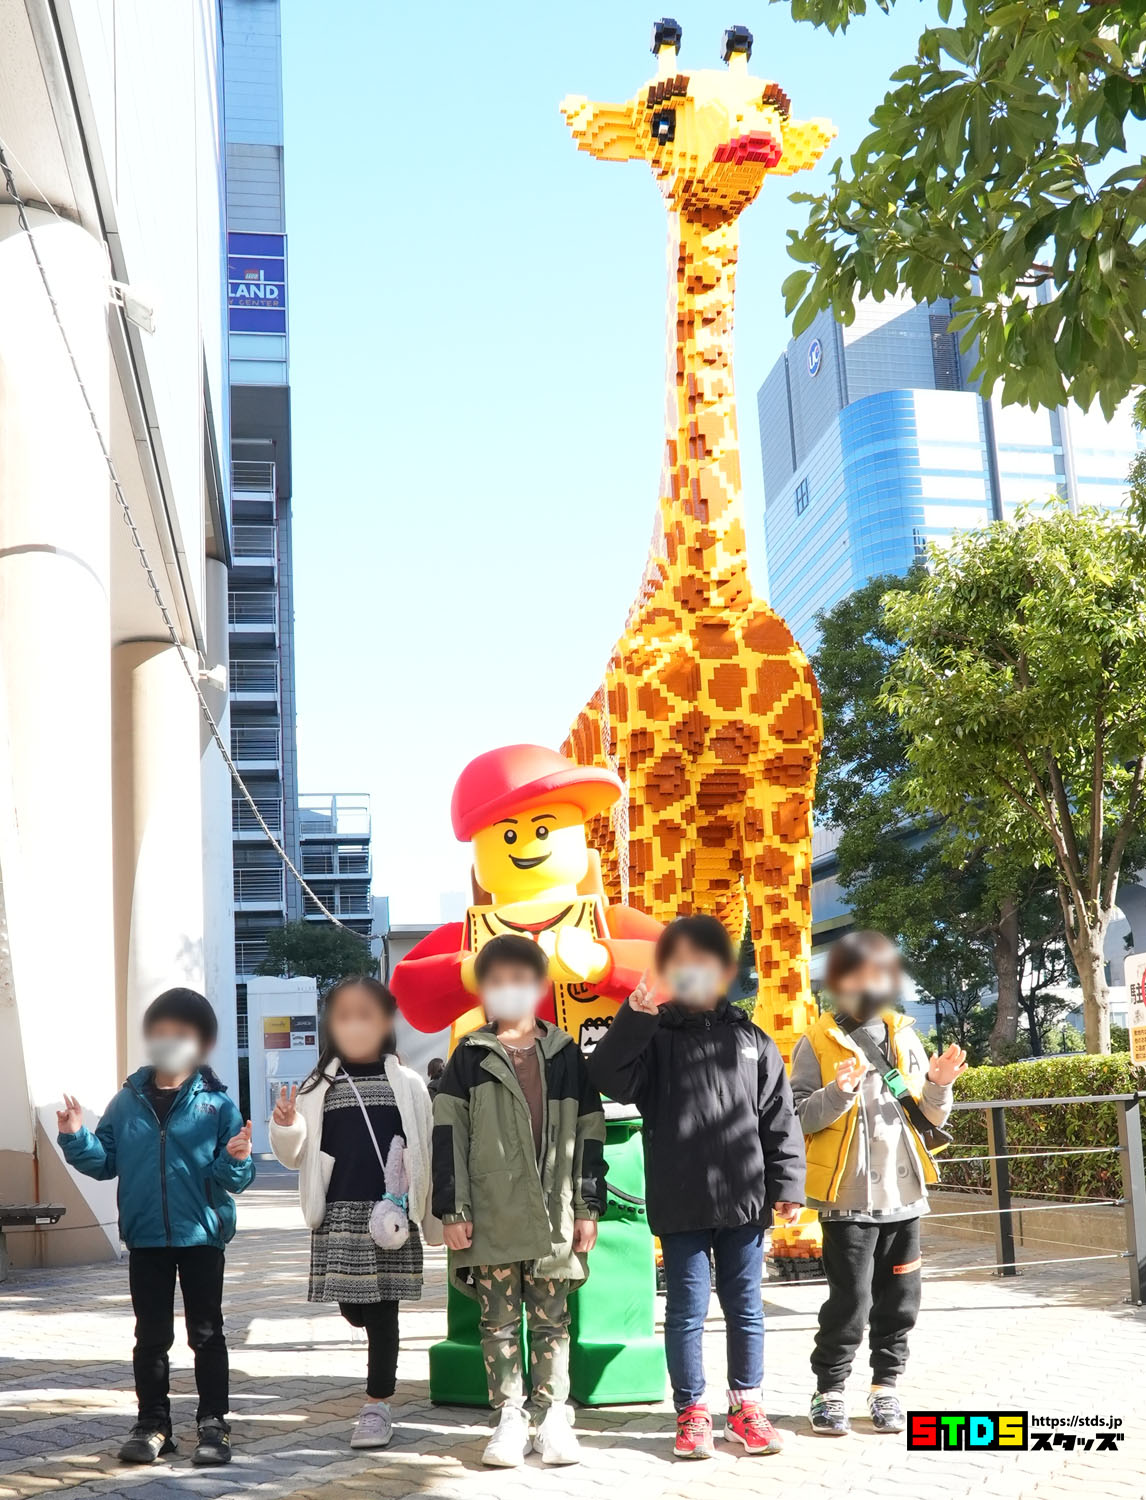 高さ6mのレゴ(R)ブロックのキリンがレゴランド(R)・ディスカバリー・センター東京があるお台場に登場！レゴ(R)ブロック約5万個を使用して作られた大型モニュメント